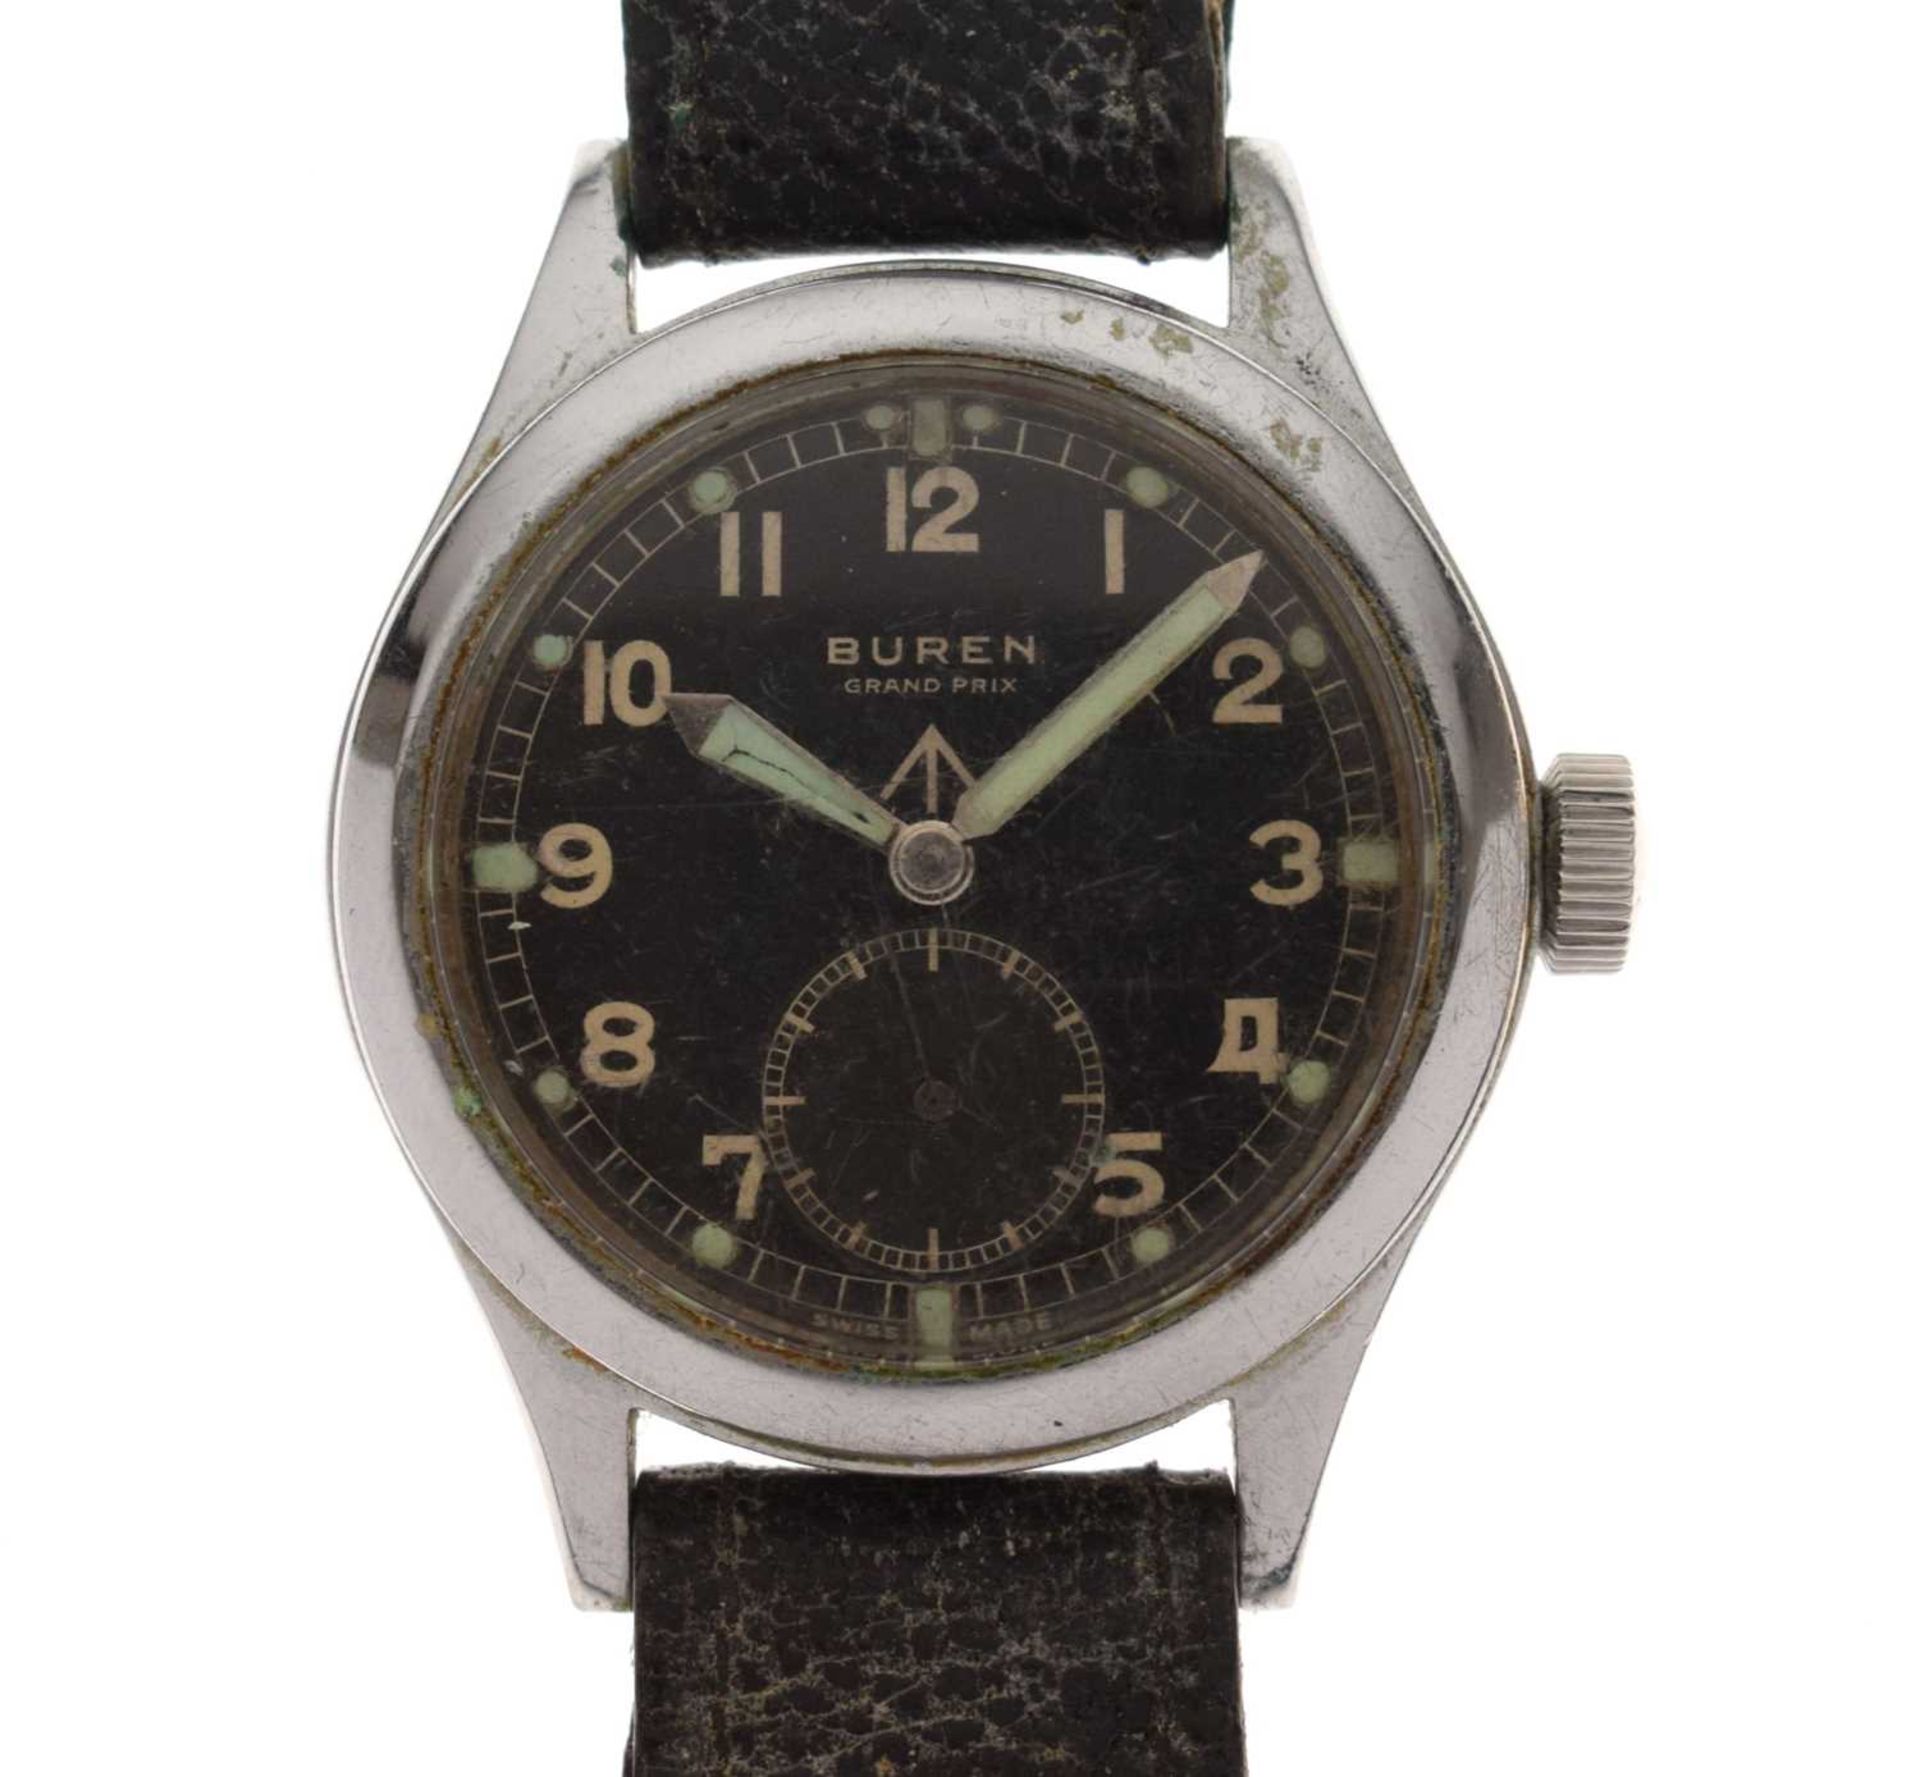 Buren - Gentleman's Grand Prix 'Dirty Dozen' British military issue wristwatch